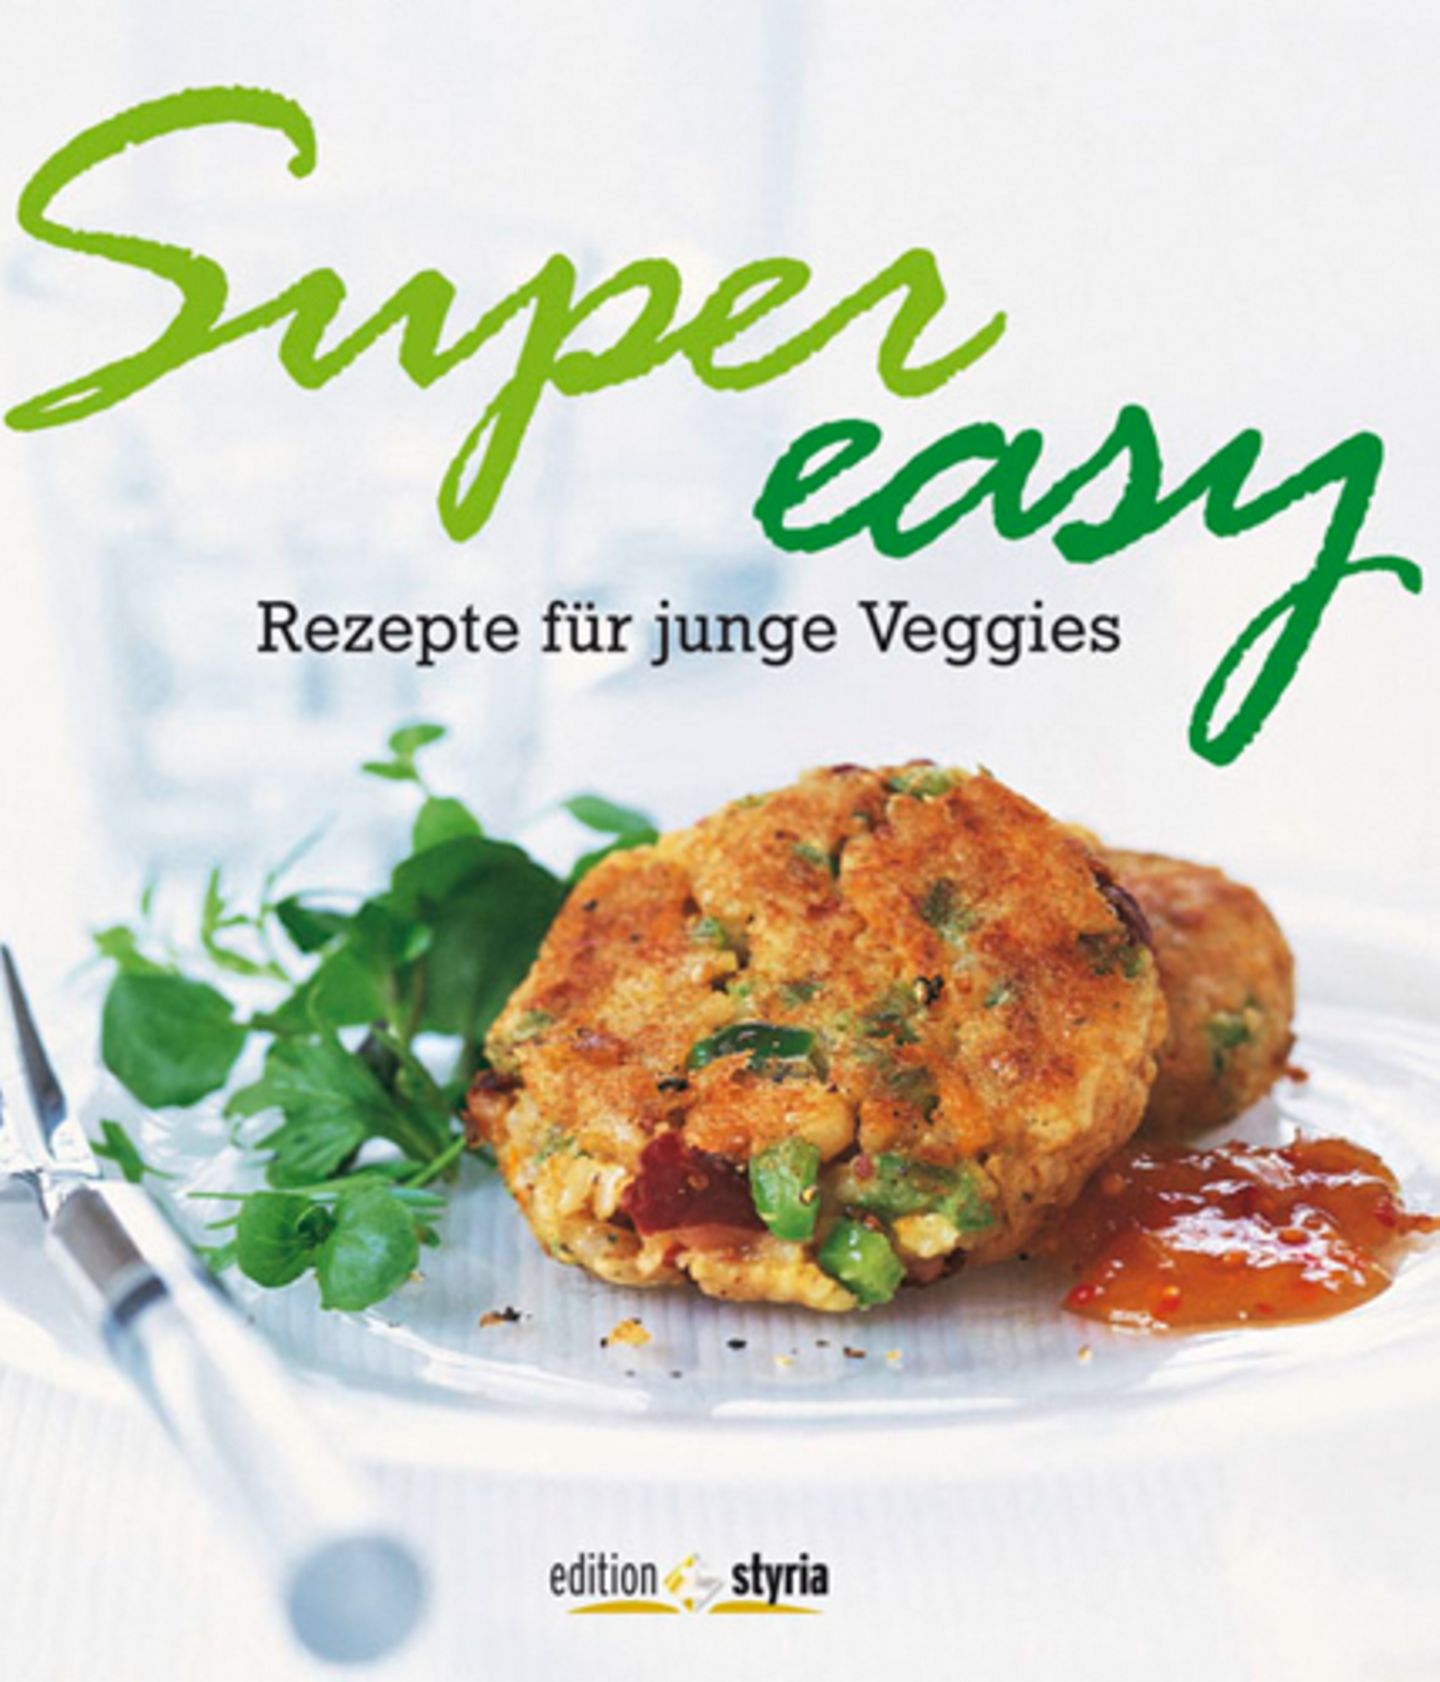 Super Easy - Rezepte für junge Veggies